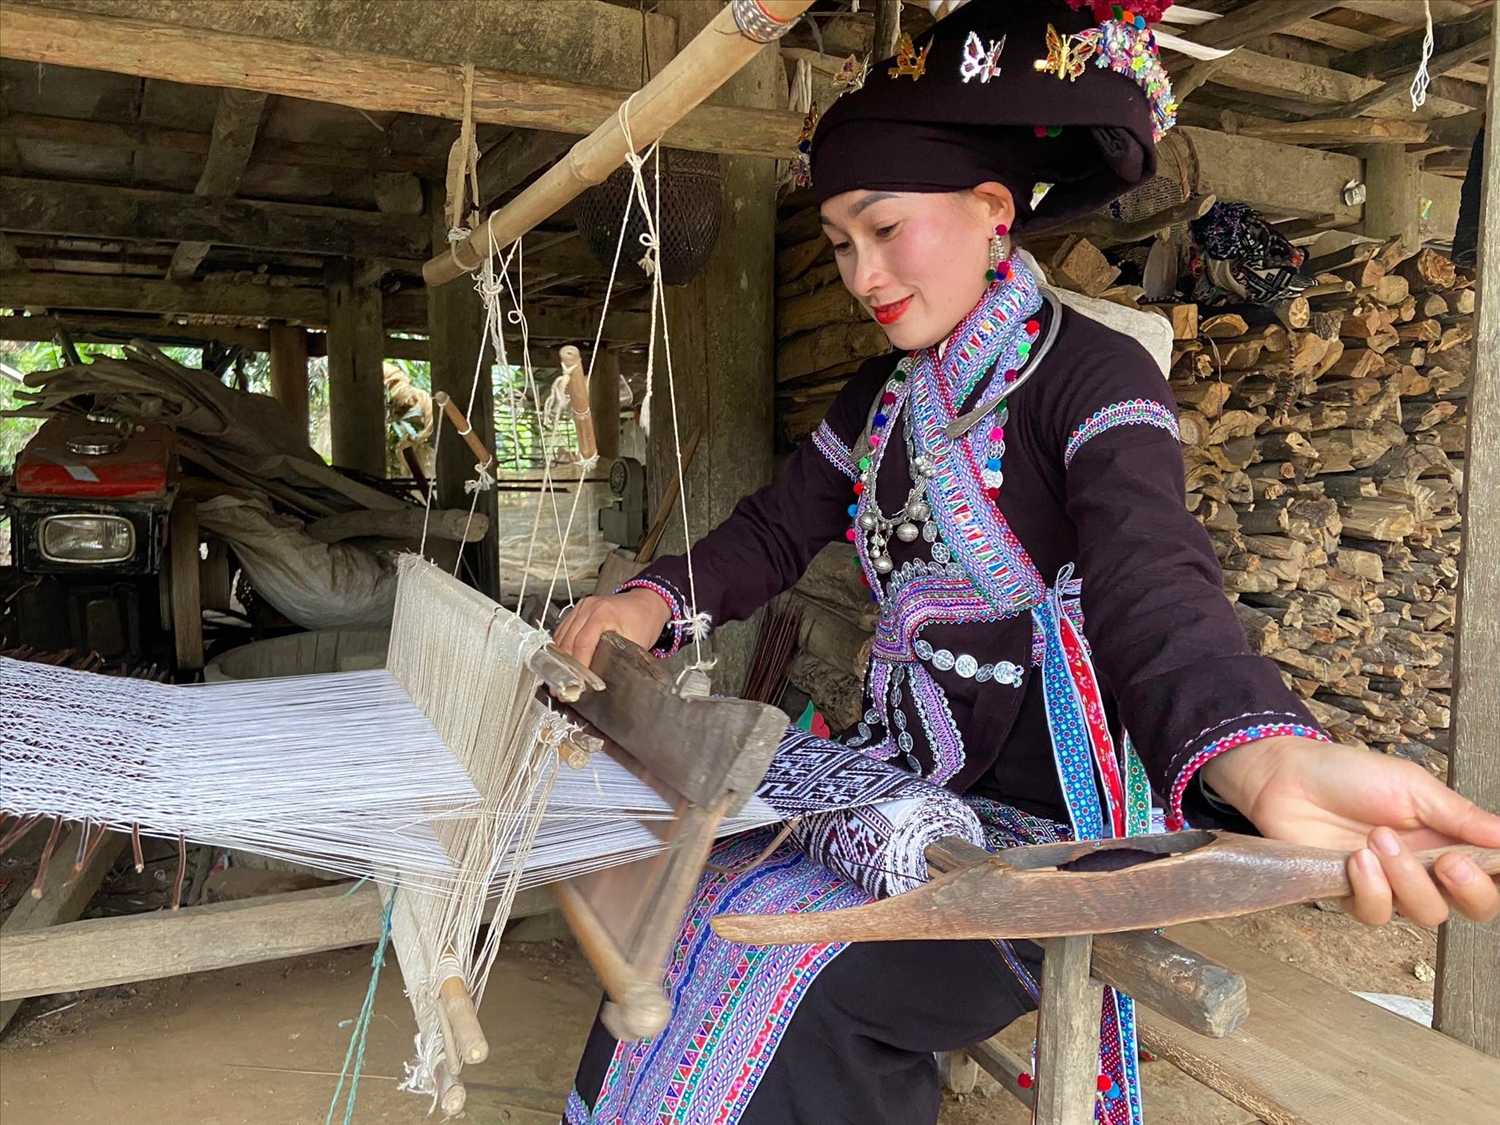 Phụ nữ dân tộc Lào khéo dệt vải, may trang phục truyền thống cho bản thân và gia đình